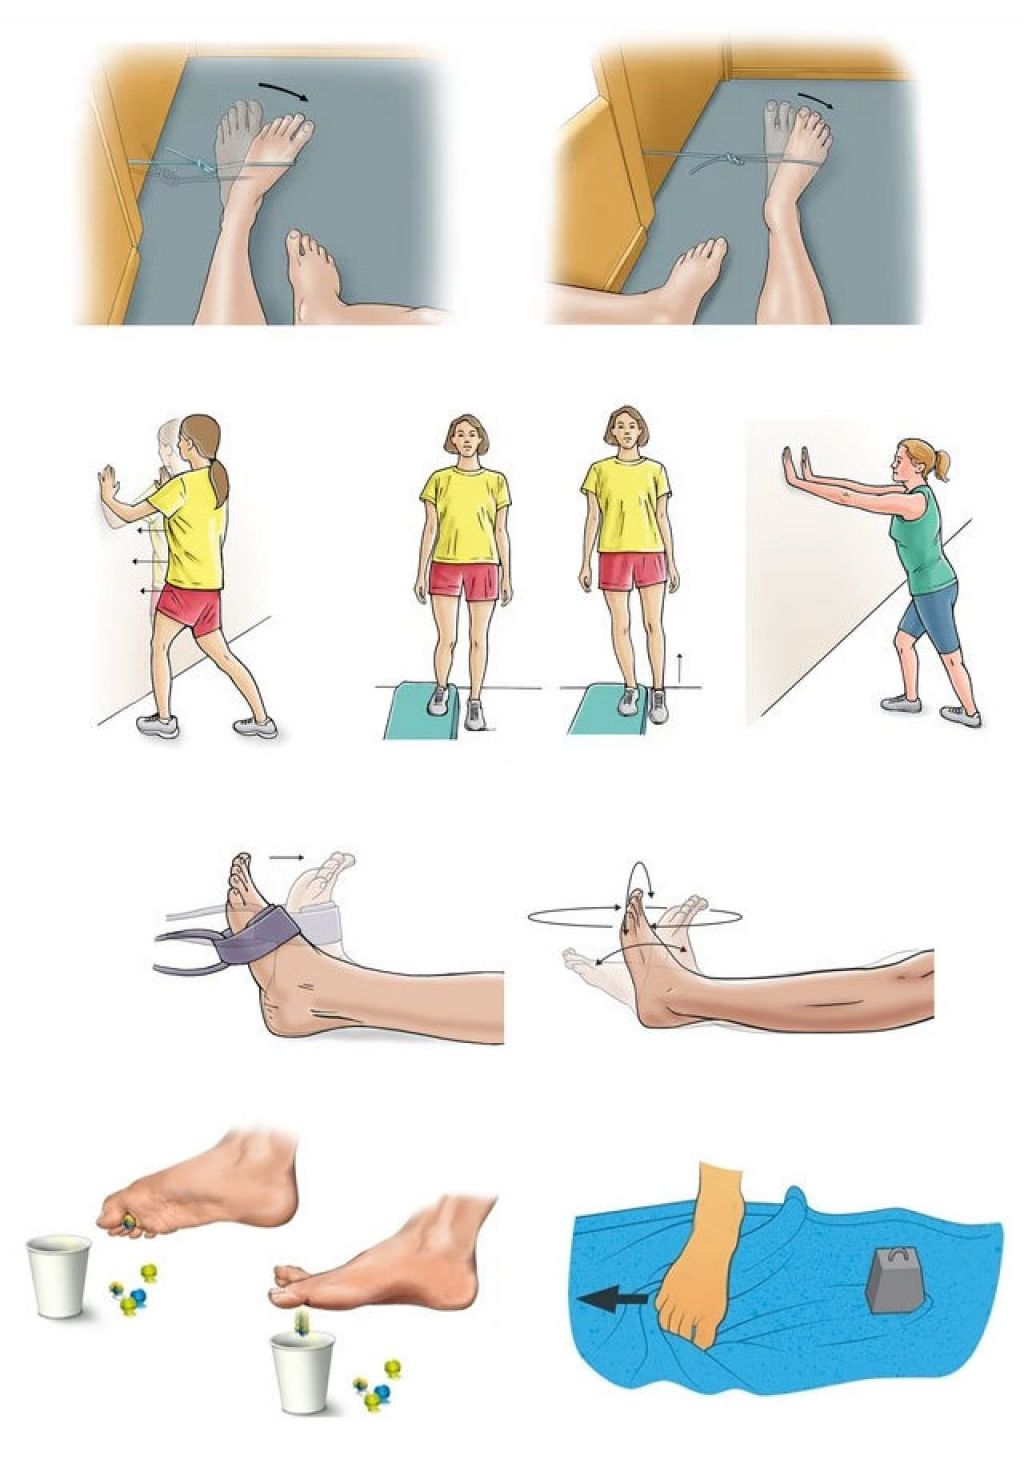 Правильно разбивающий. Гимнастика для голеностопного сустава после перелома. Реабилитация после перелома стопы упражнения. Упражнения для реабилитации после перелома плюсневой кости стопы. Упражнения для разрабатывания стопы после перелома.